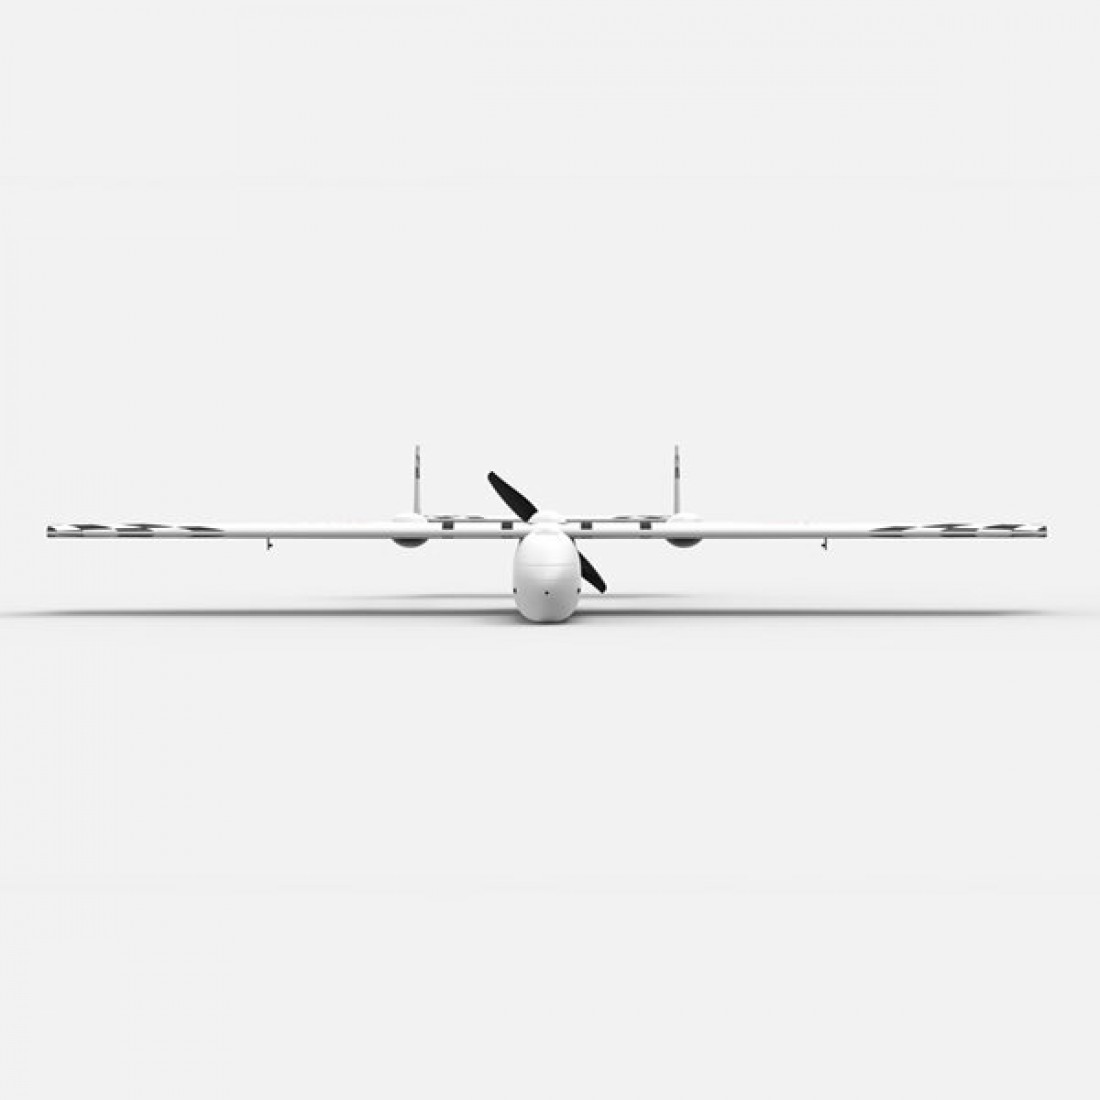 Sonicmodell Skyhunter Mm Wingspan Epo Long Range Fpv Uav Platform